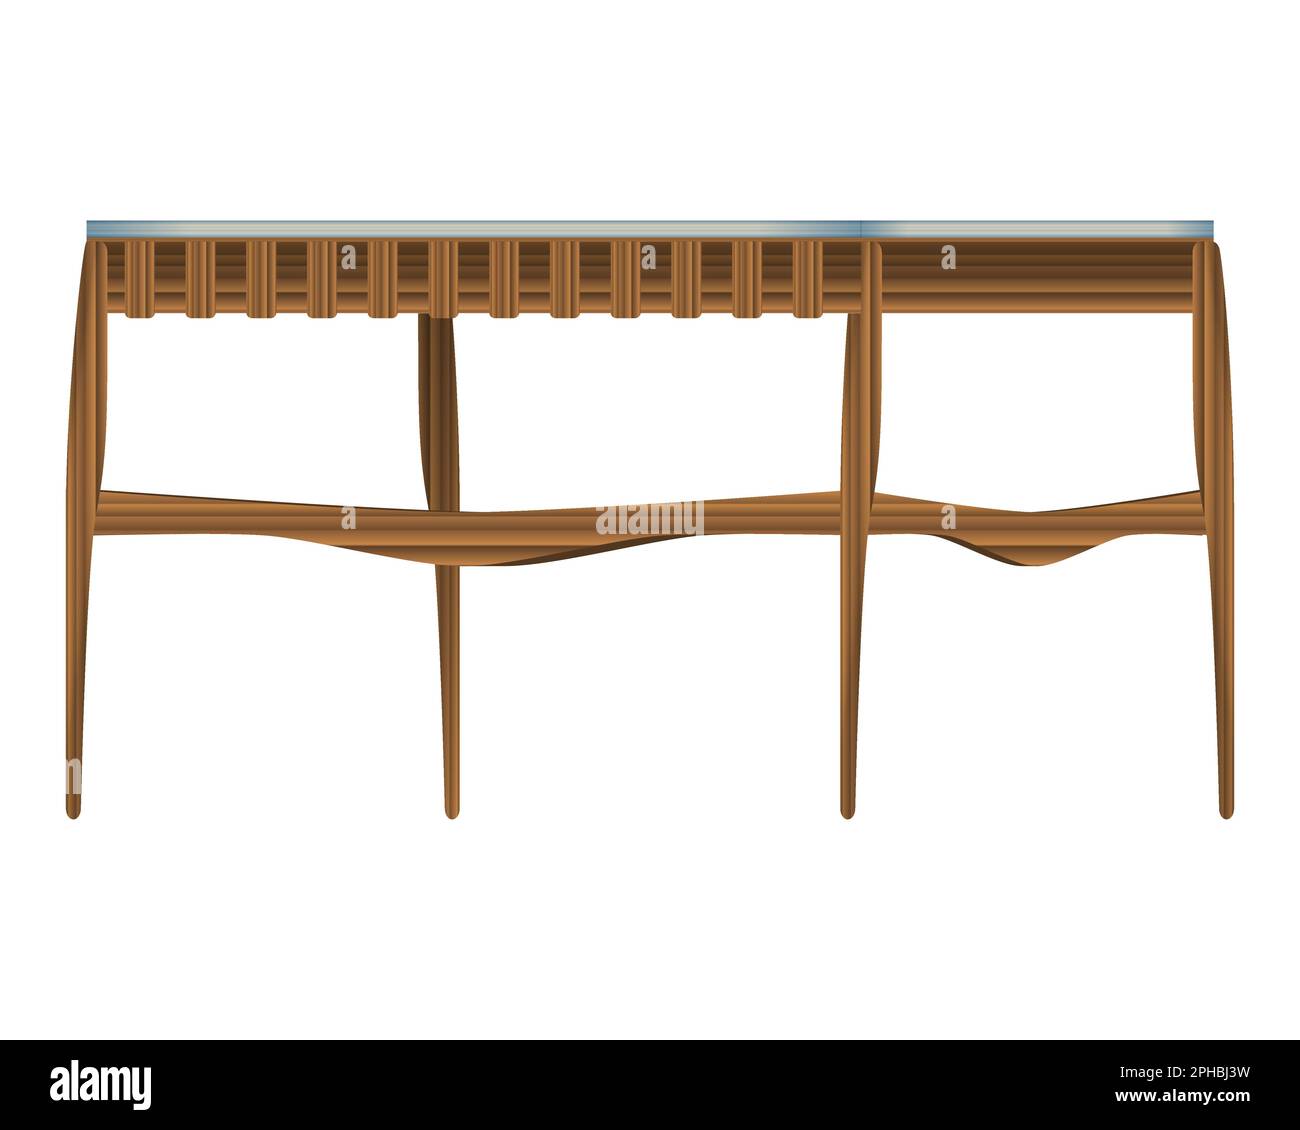 Faltbarer Holztisch, Dreiviertelansicht in realistischem Stil. Türkisfarbene Tischplatte. Heim Holzmöbel Design. Farbenfrohe Vektordarstellung auf einem weißen b Stock Vektor